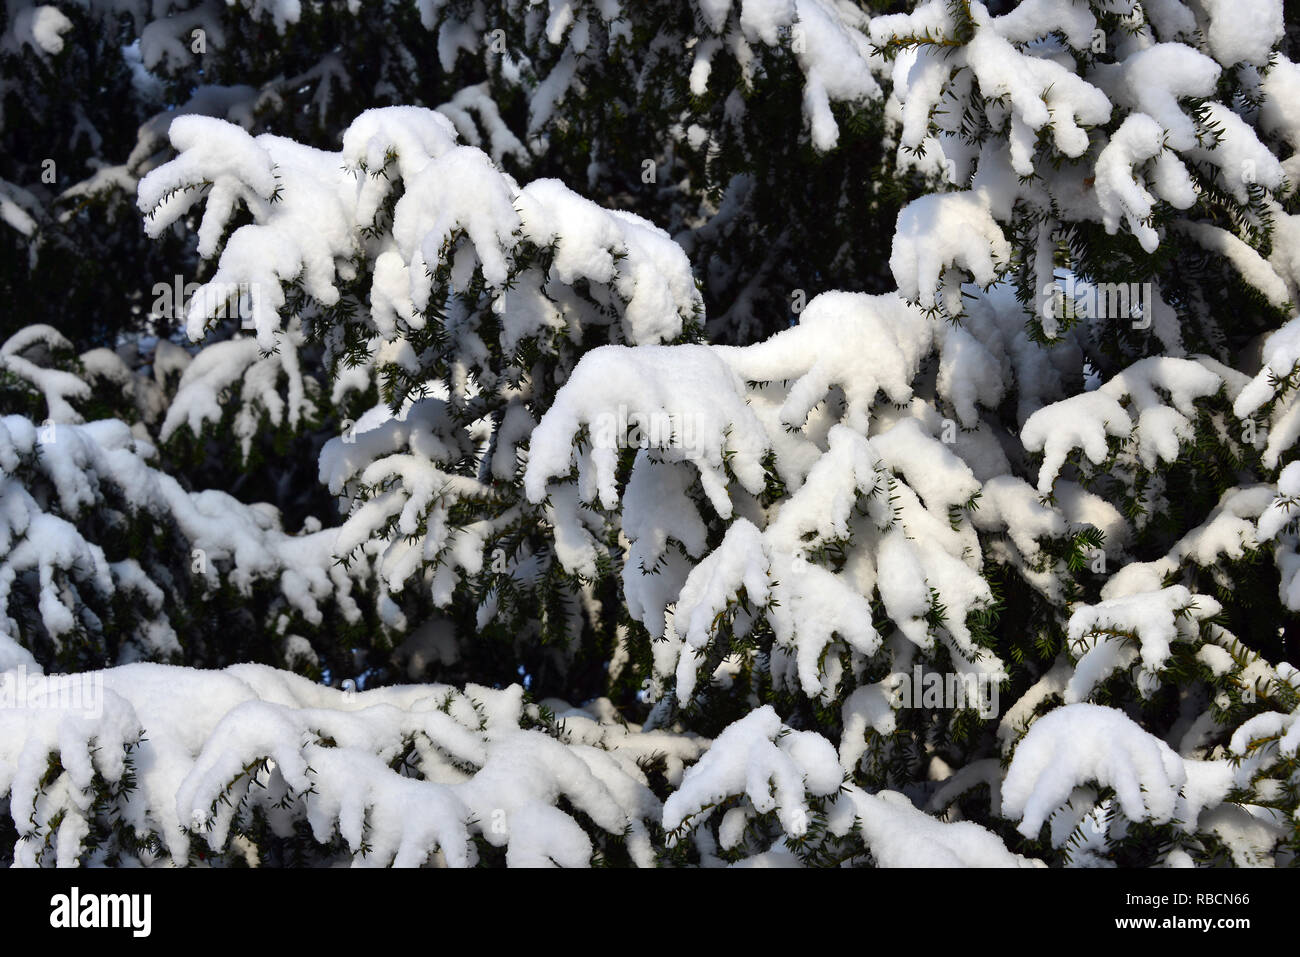 Yew tree under snow in winter. Europäische Eibe. Taxus baccata. Tiszafa a hó alatt télen. Stock Photo